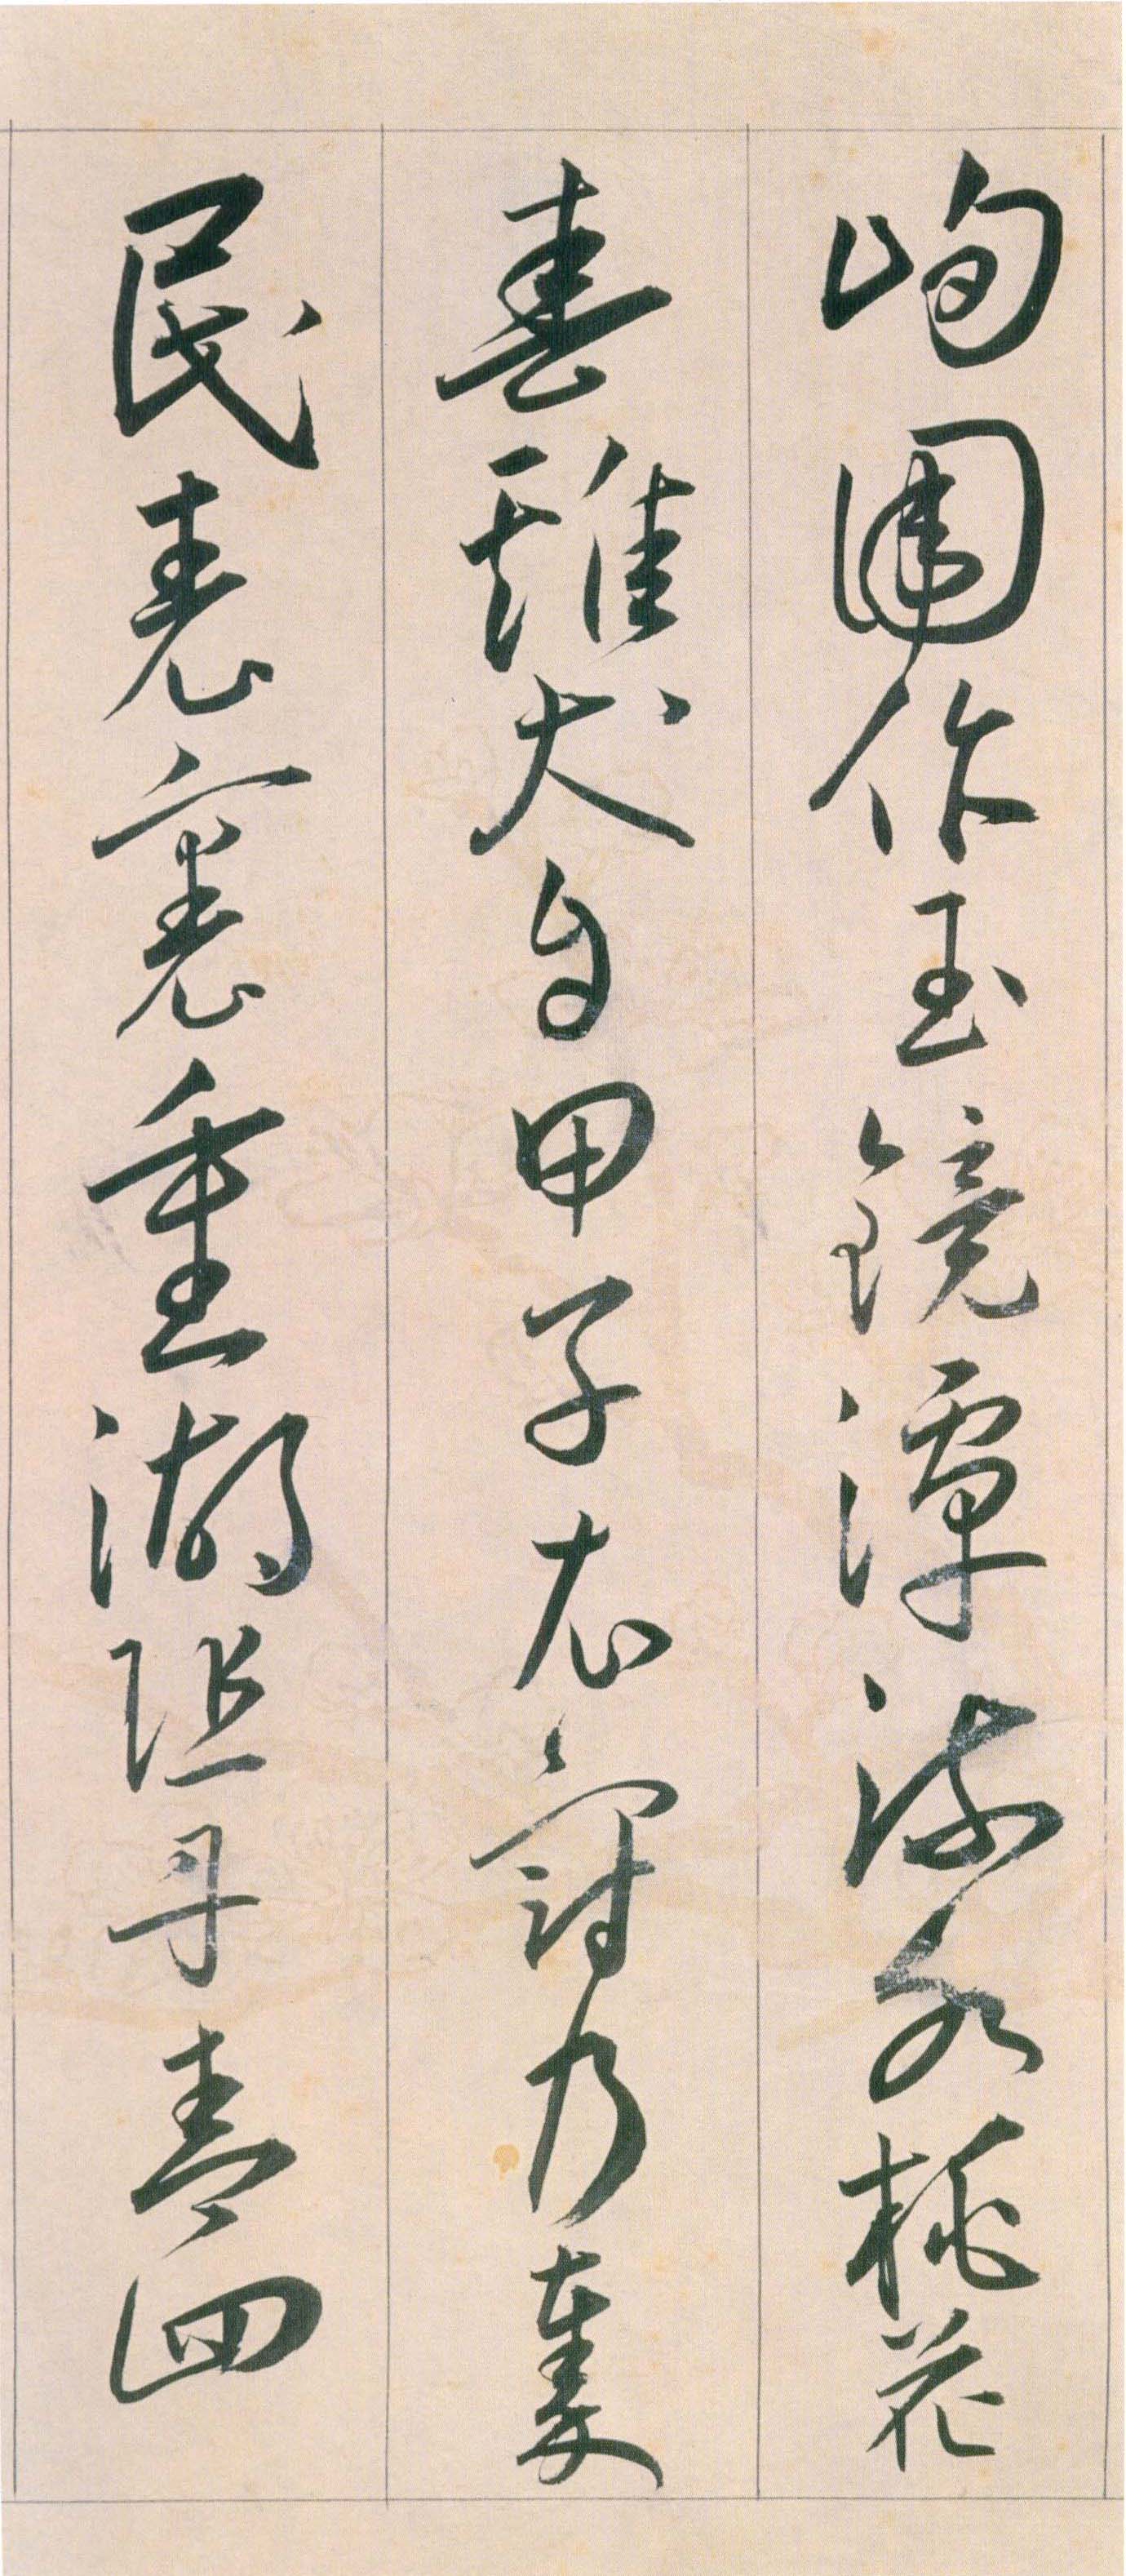 王宠《自书游包山诗》卷-天津艺术博物院藏(图17)